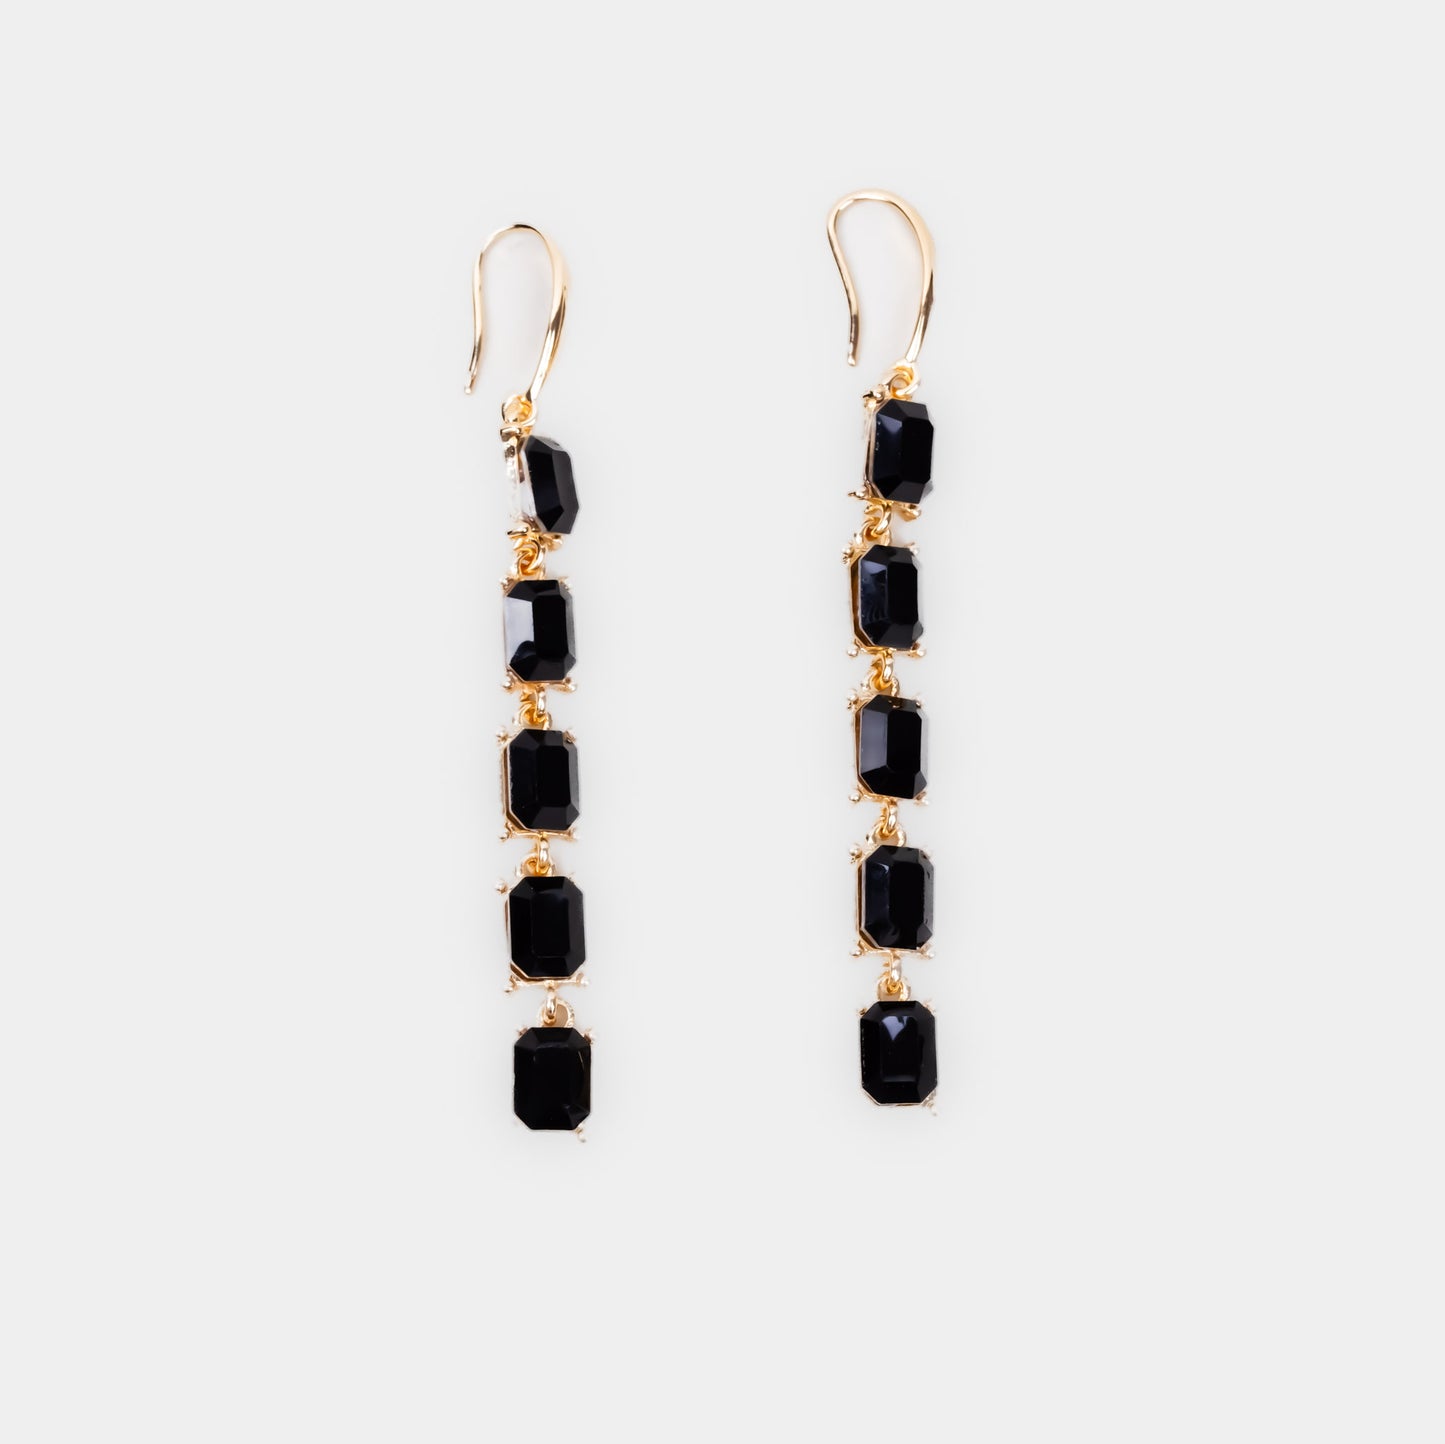 Cercei lungi eleganți pe lanț cu pietre colorate - Negru, Auriu